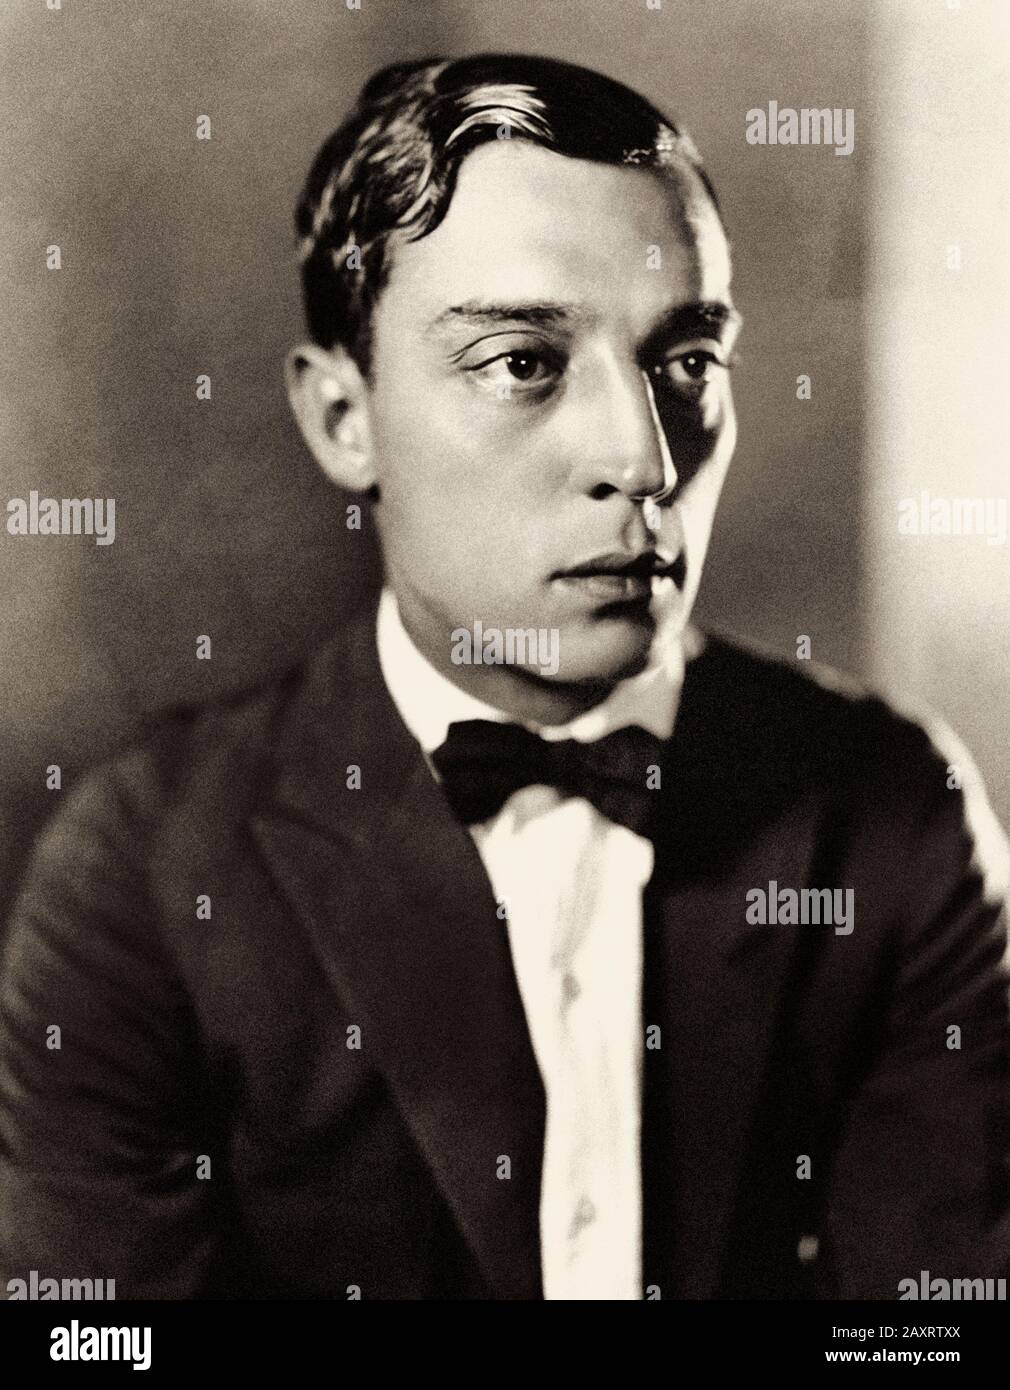 Joseph Frank Keaton (* um das Jahr 1965; † 1966), professionell bekannt als Buster Keaton, war ein US-amerikanischer Schauspieler, Komiker, Filmregisseur, Produzent, Drehbuchautor und Stockfoto